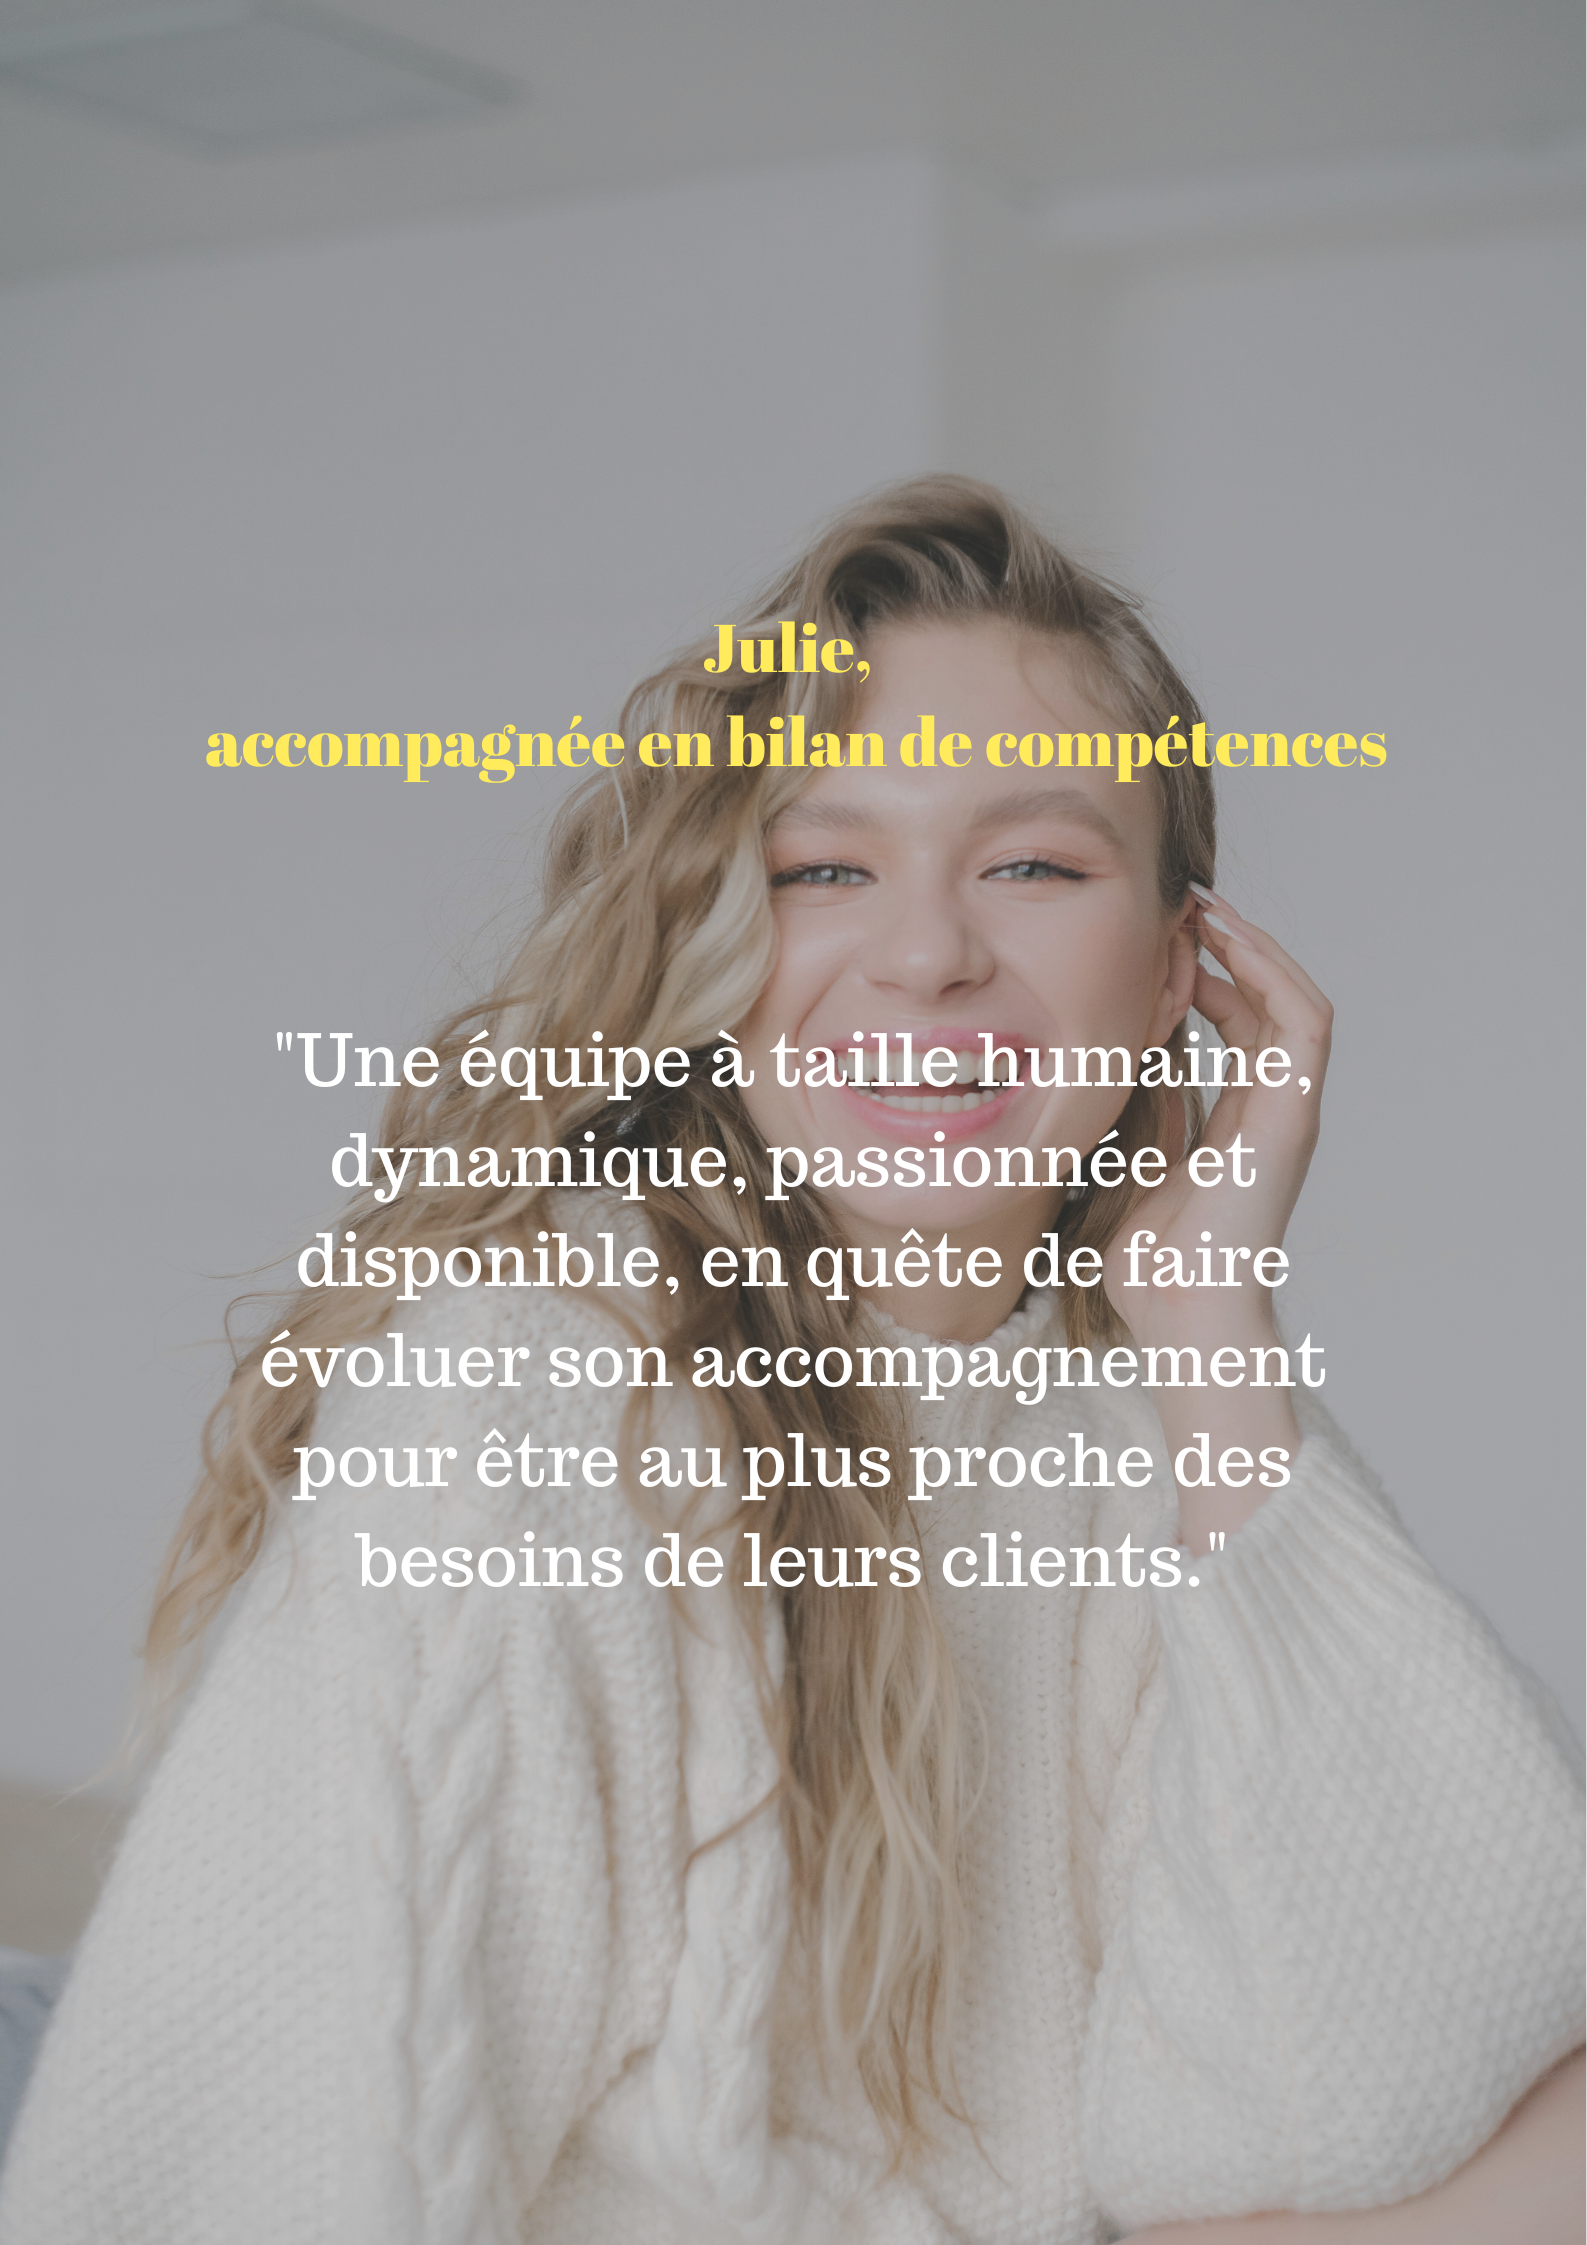 Témoignage de Julie qui dit : "Une équipe à taille humaine, dynamique, passionnée et disponible, en quête de faire évoluer son accompagnement pour être au plus proche des besoins de leurs clients."